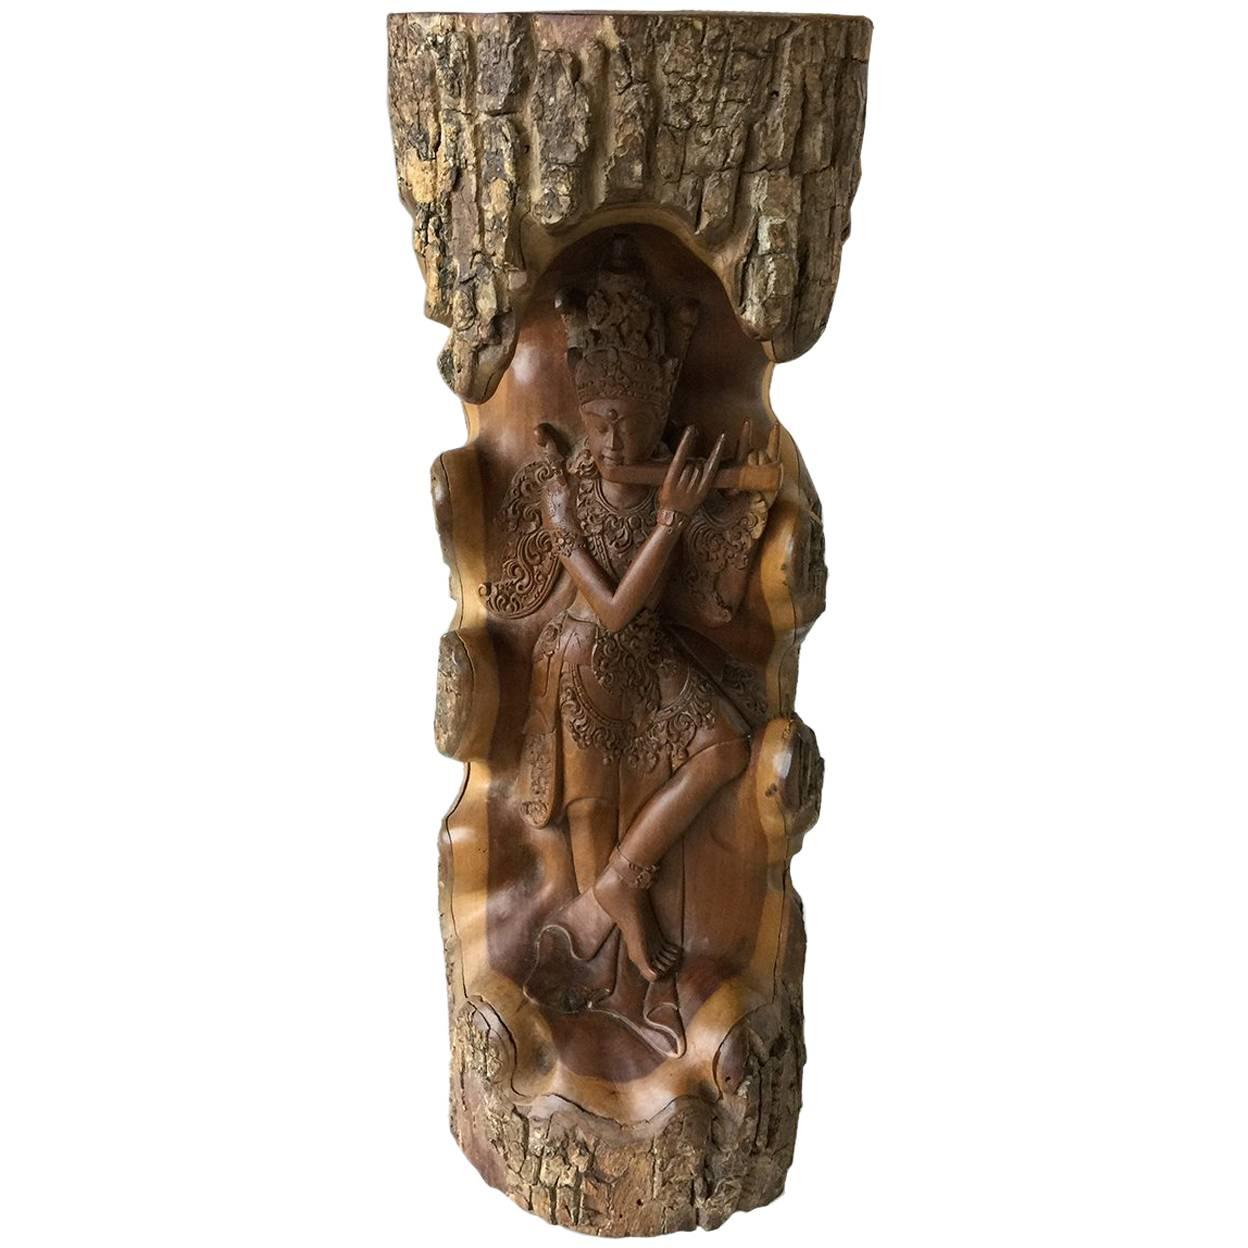 statue en bois sculptée à la main représentant Lord Krishna provenant d'un arbre